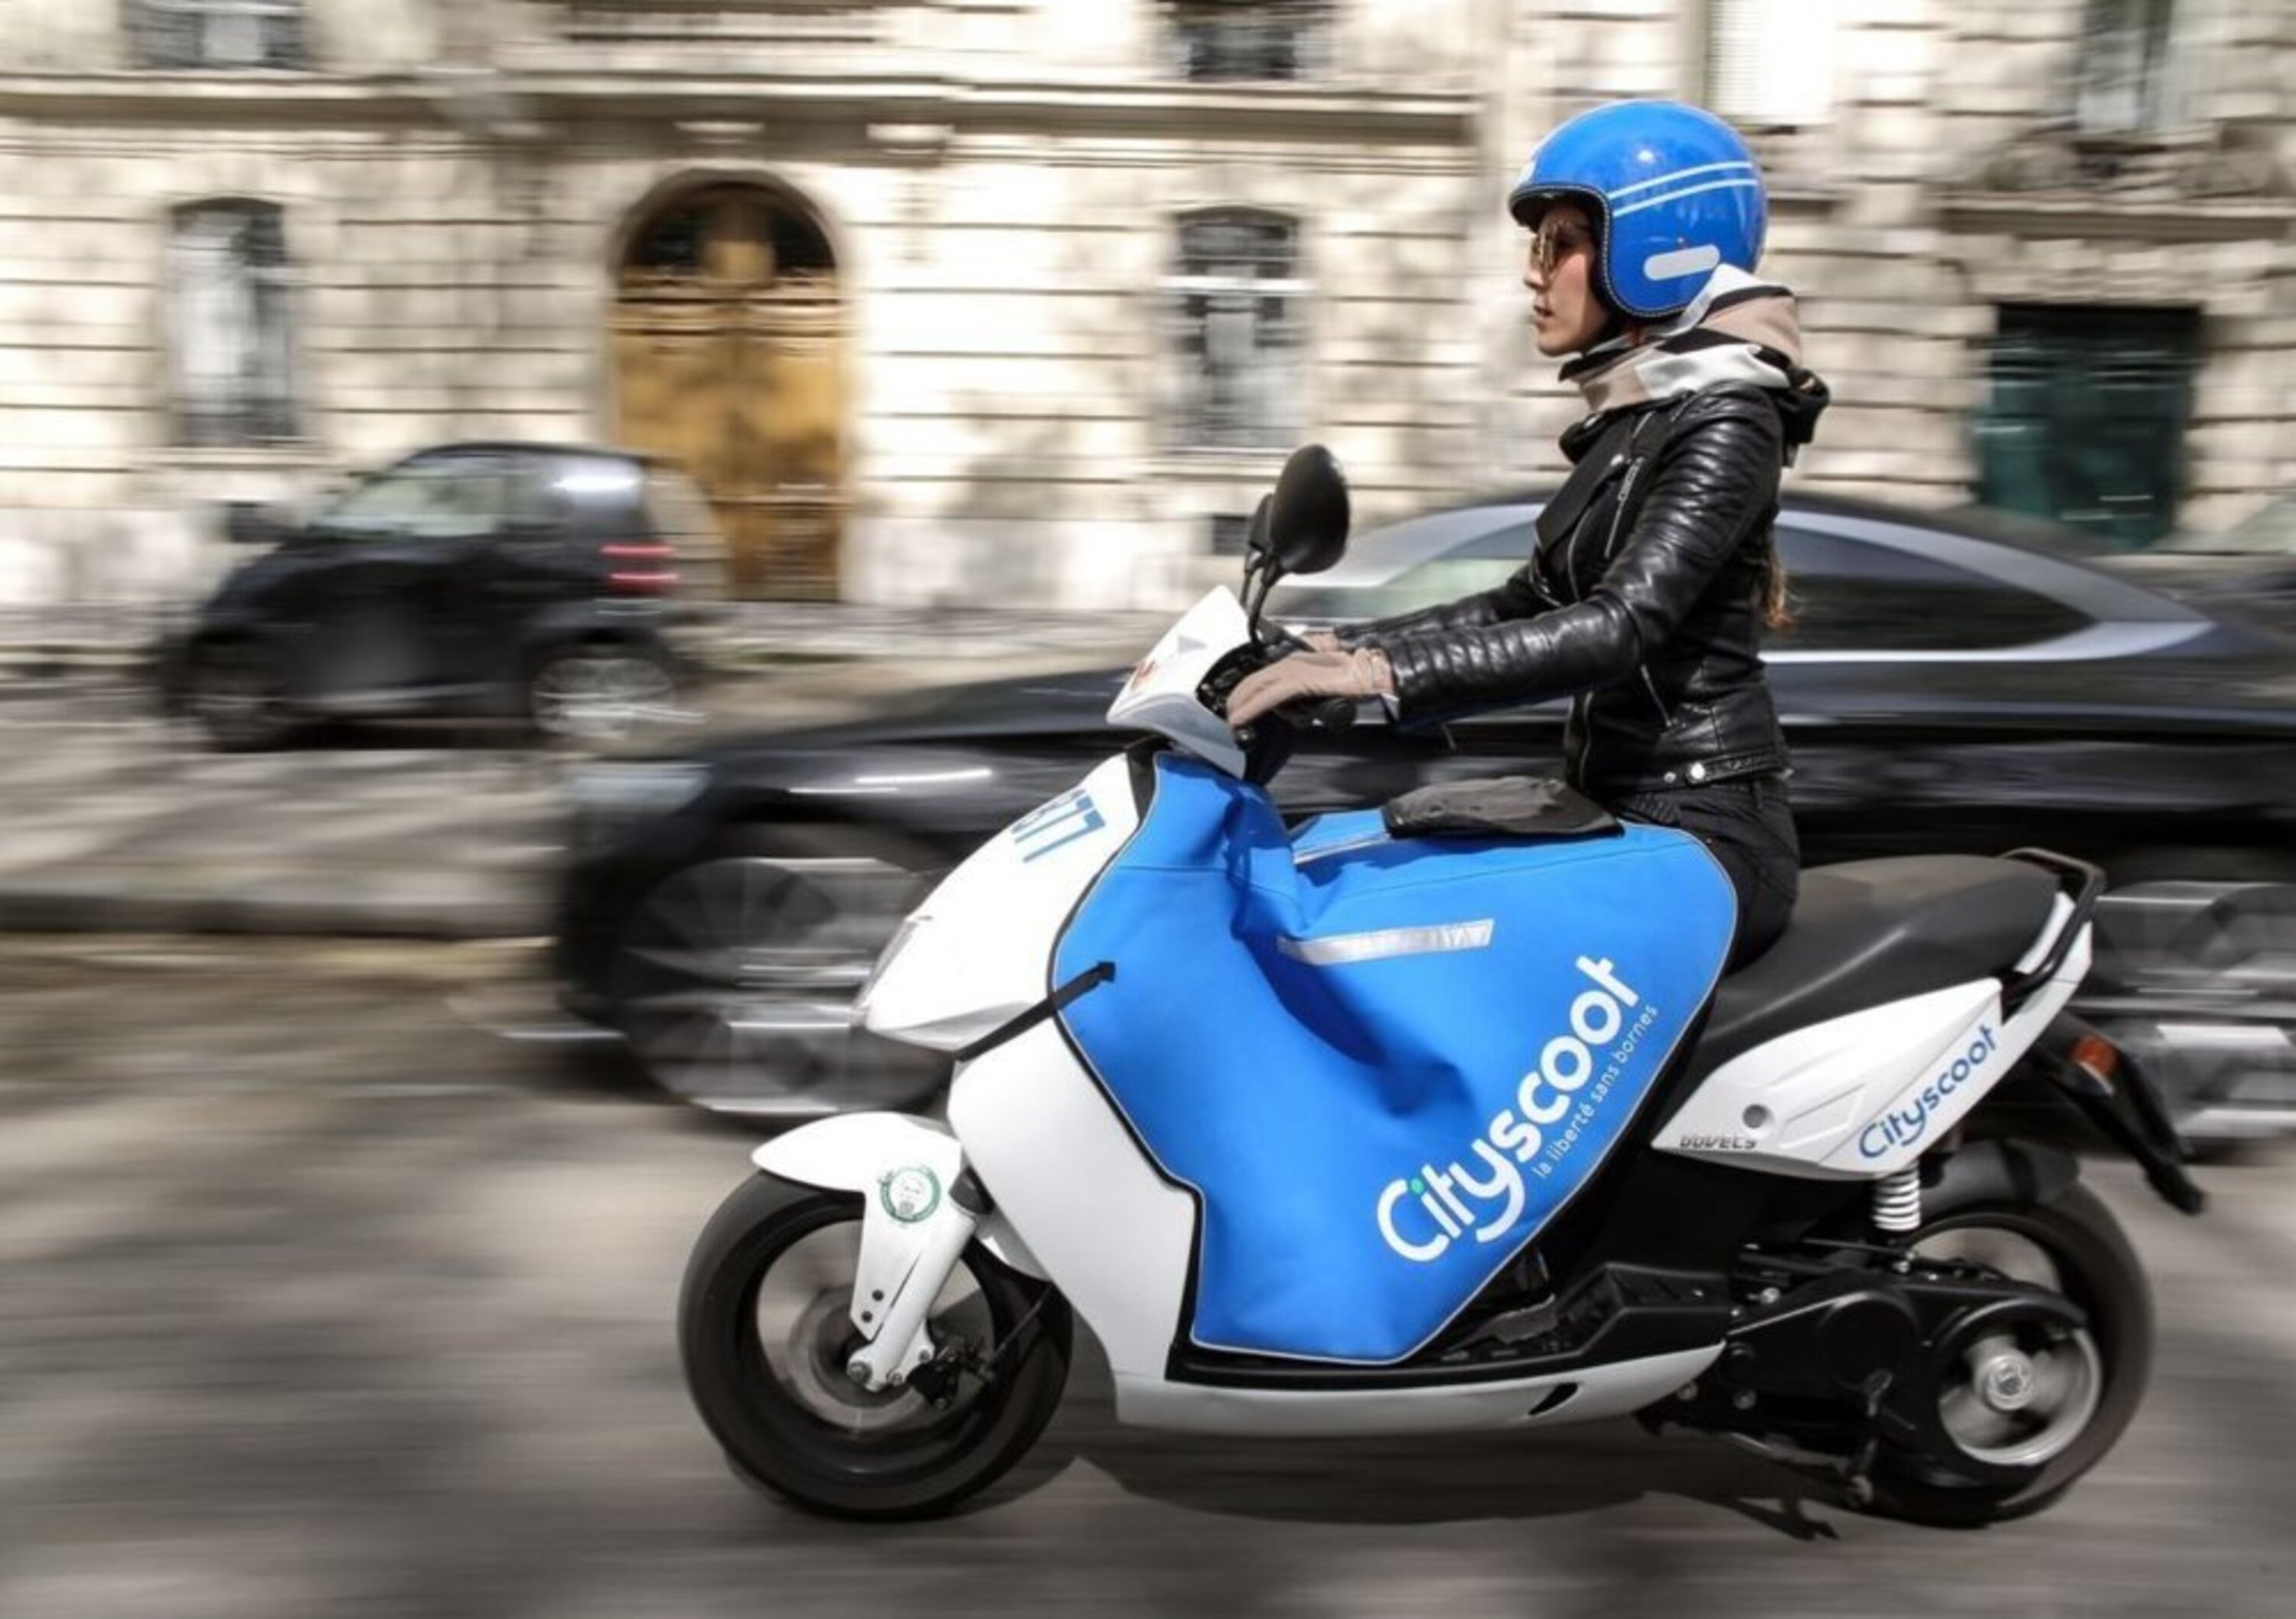 La nostra guida allo scooter sharing ecosostenibile